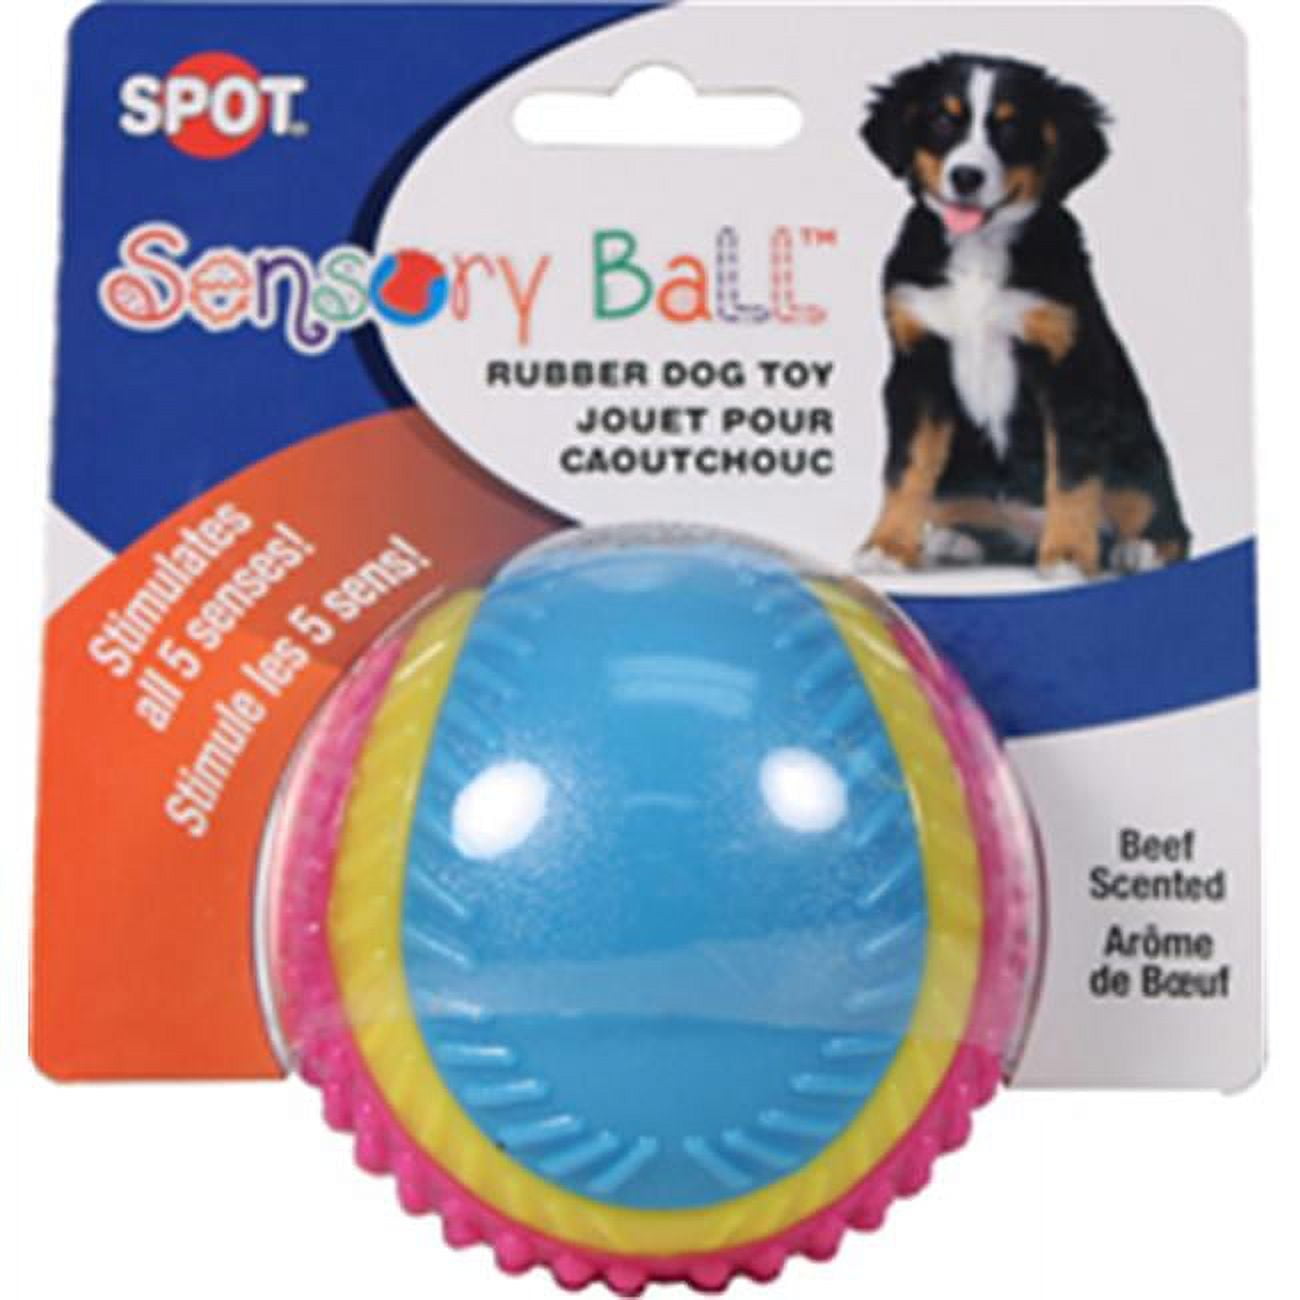 Ethical Dog 689733 Sensory Ball Rubber Dog Toy, Medium